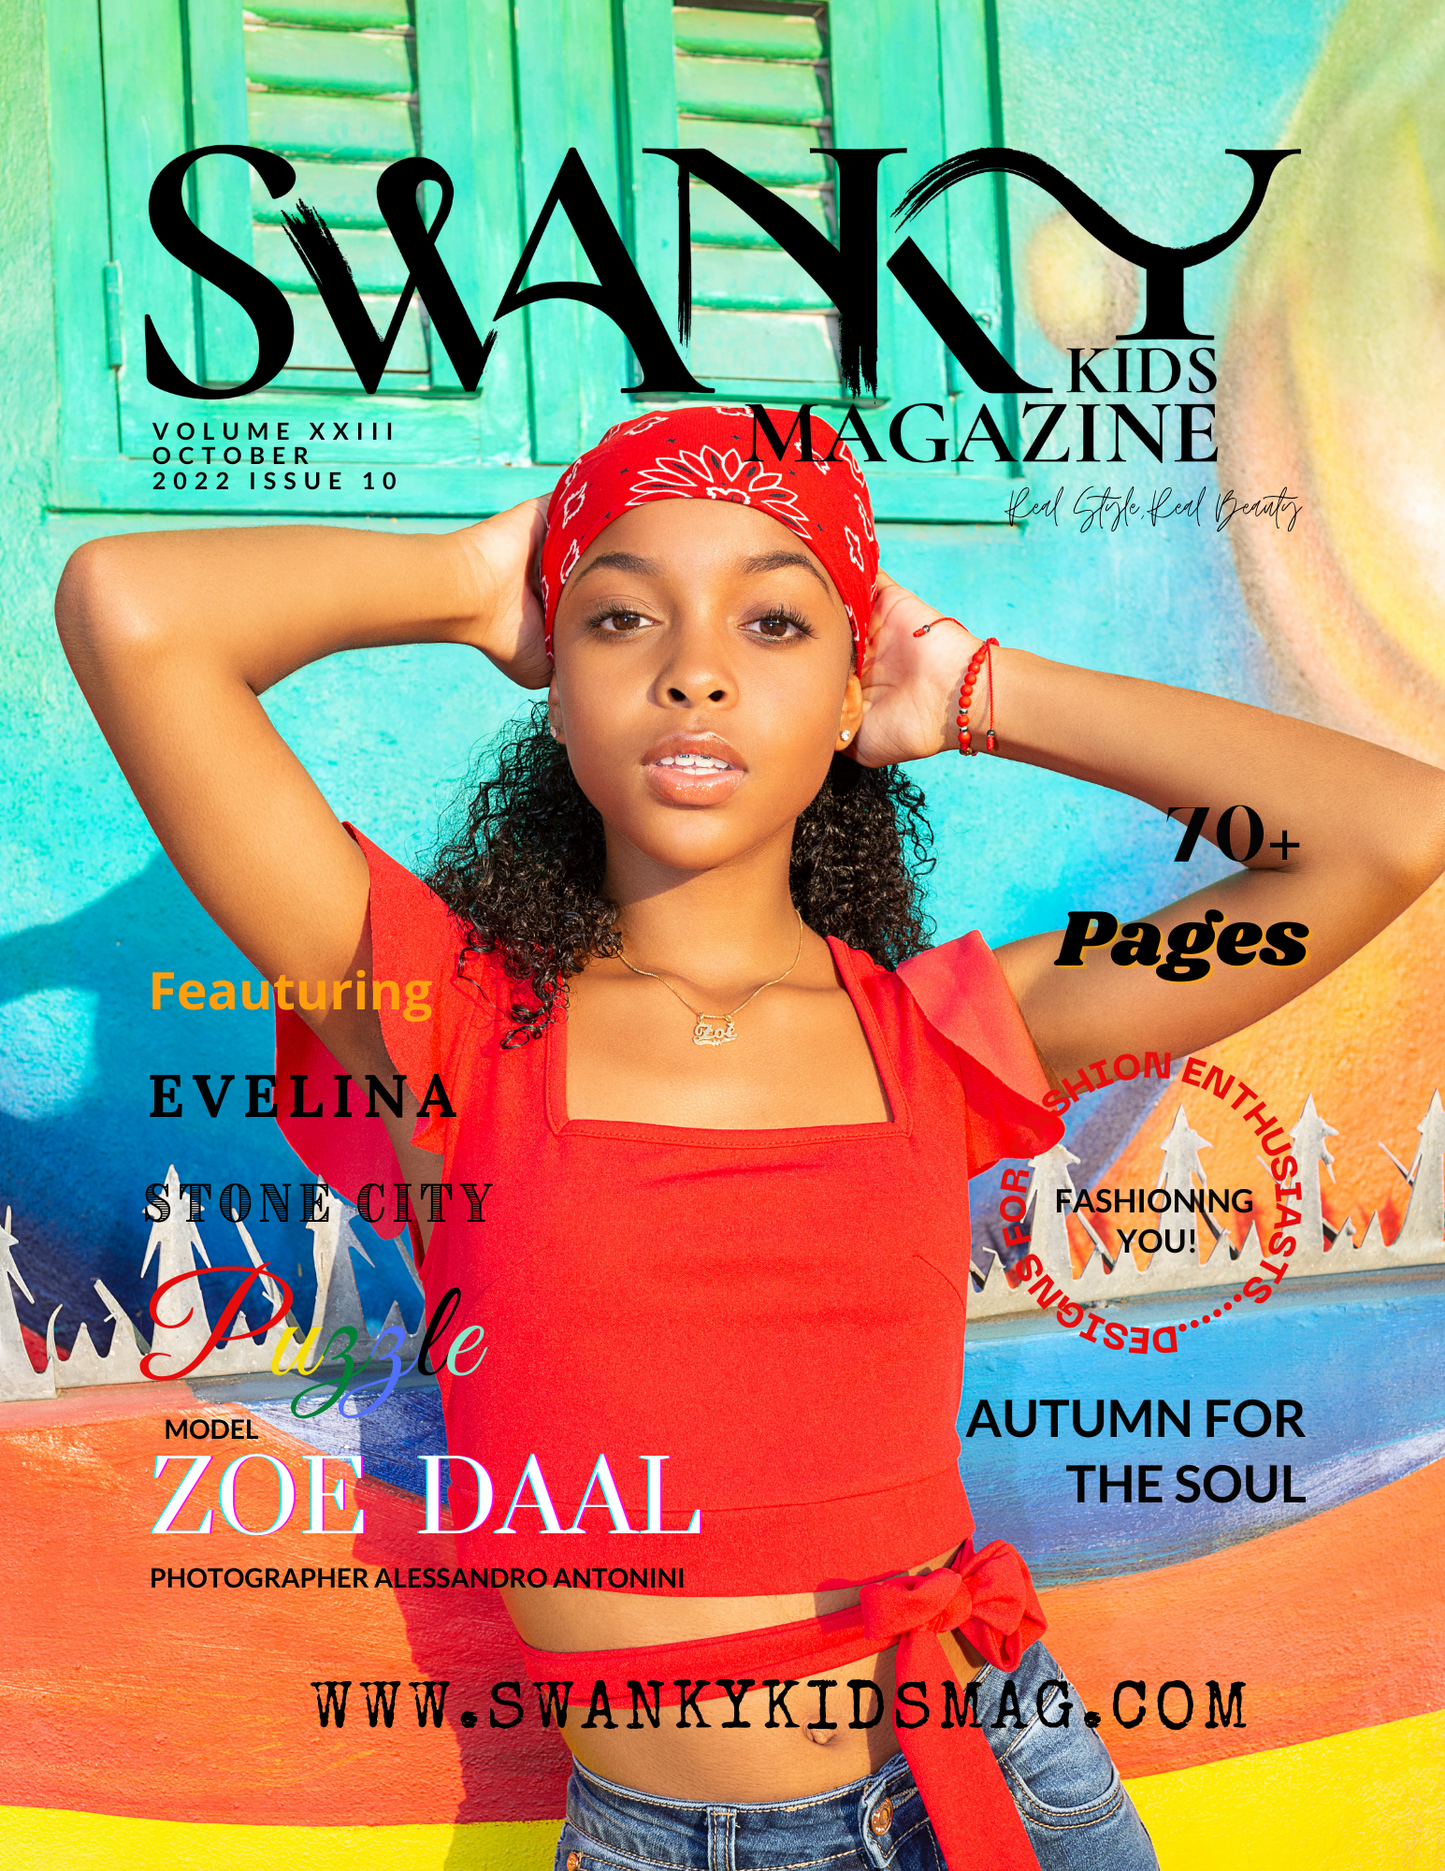 Swanky Kids Magazine October 2022 VOL XXIII Issue 10